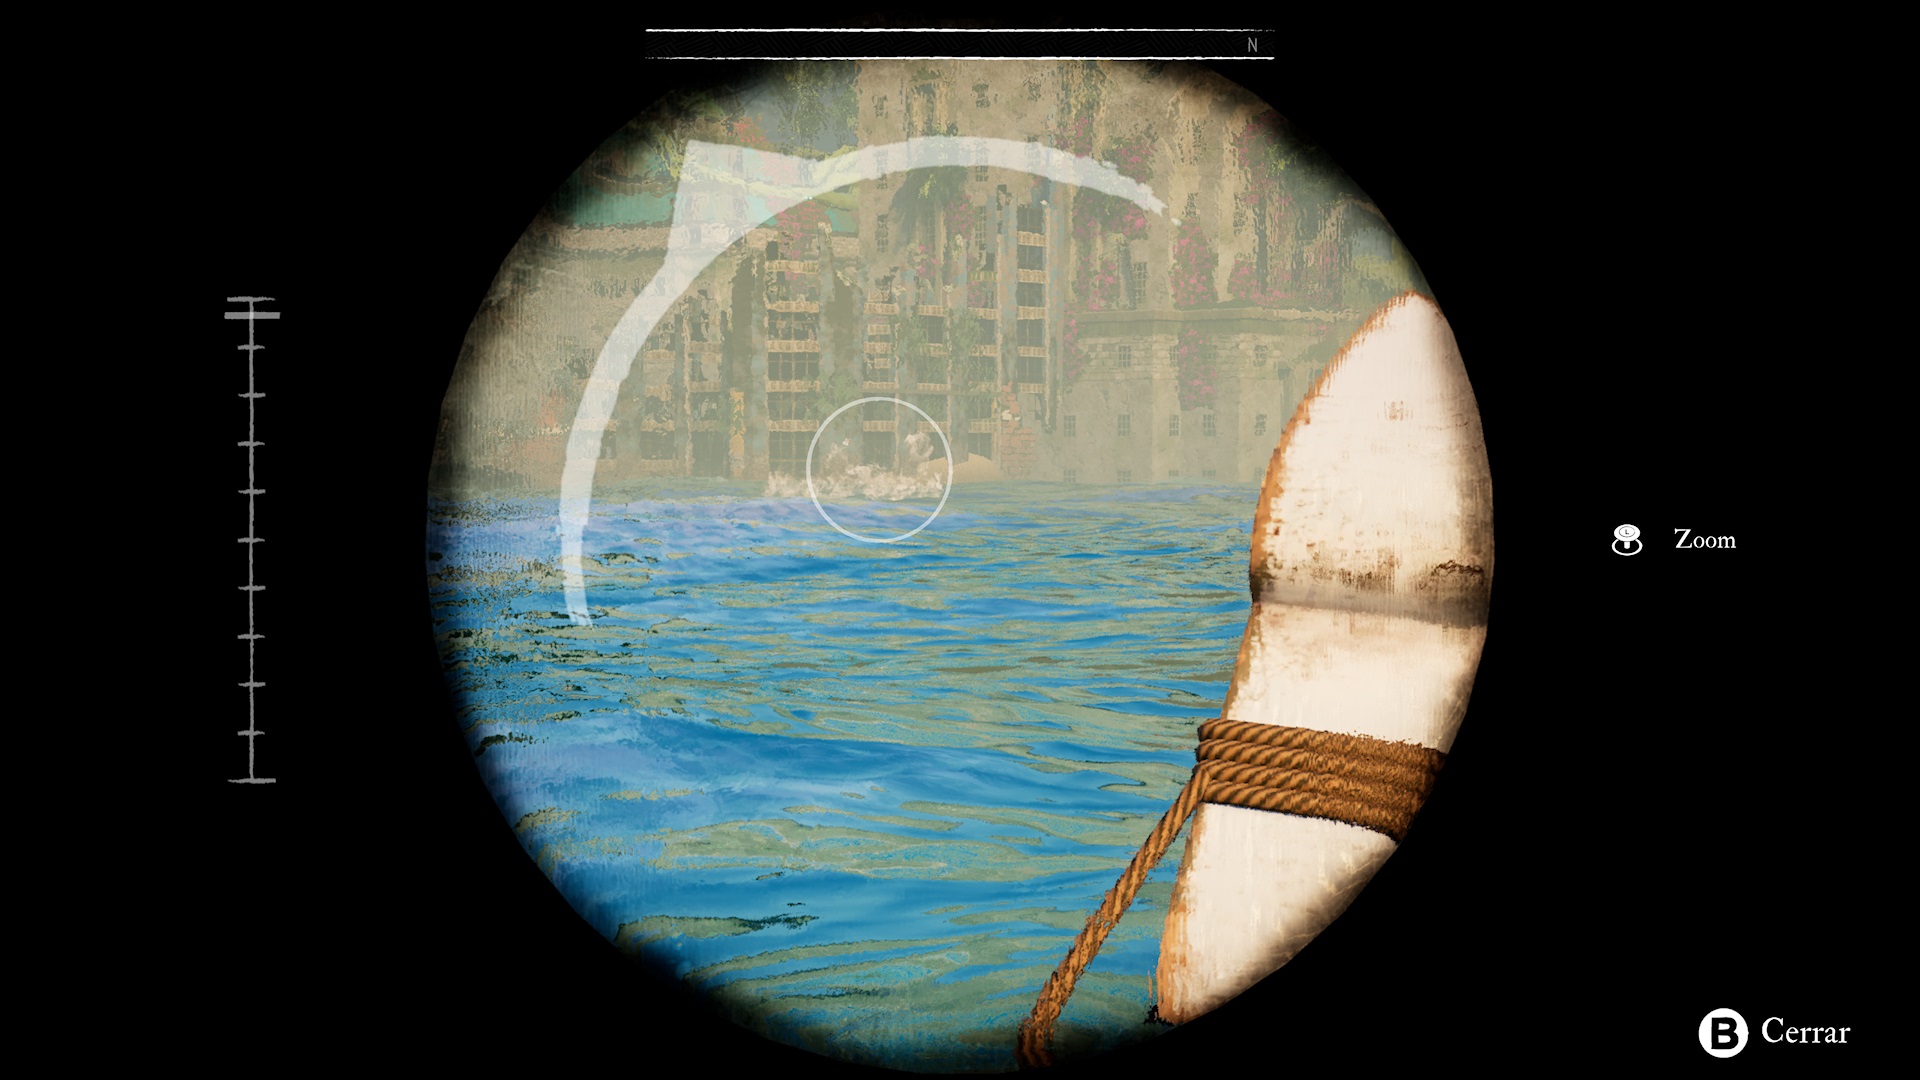 Análisis de Submerged: Hidden Depths - Analizamos Submerged: Hidden Depths para Xbox Series, un título relajante y de puzles que incentiva la exploración en una ciudad totalmente sumergida.